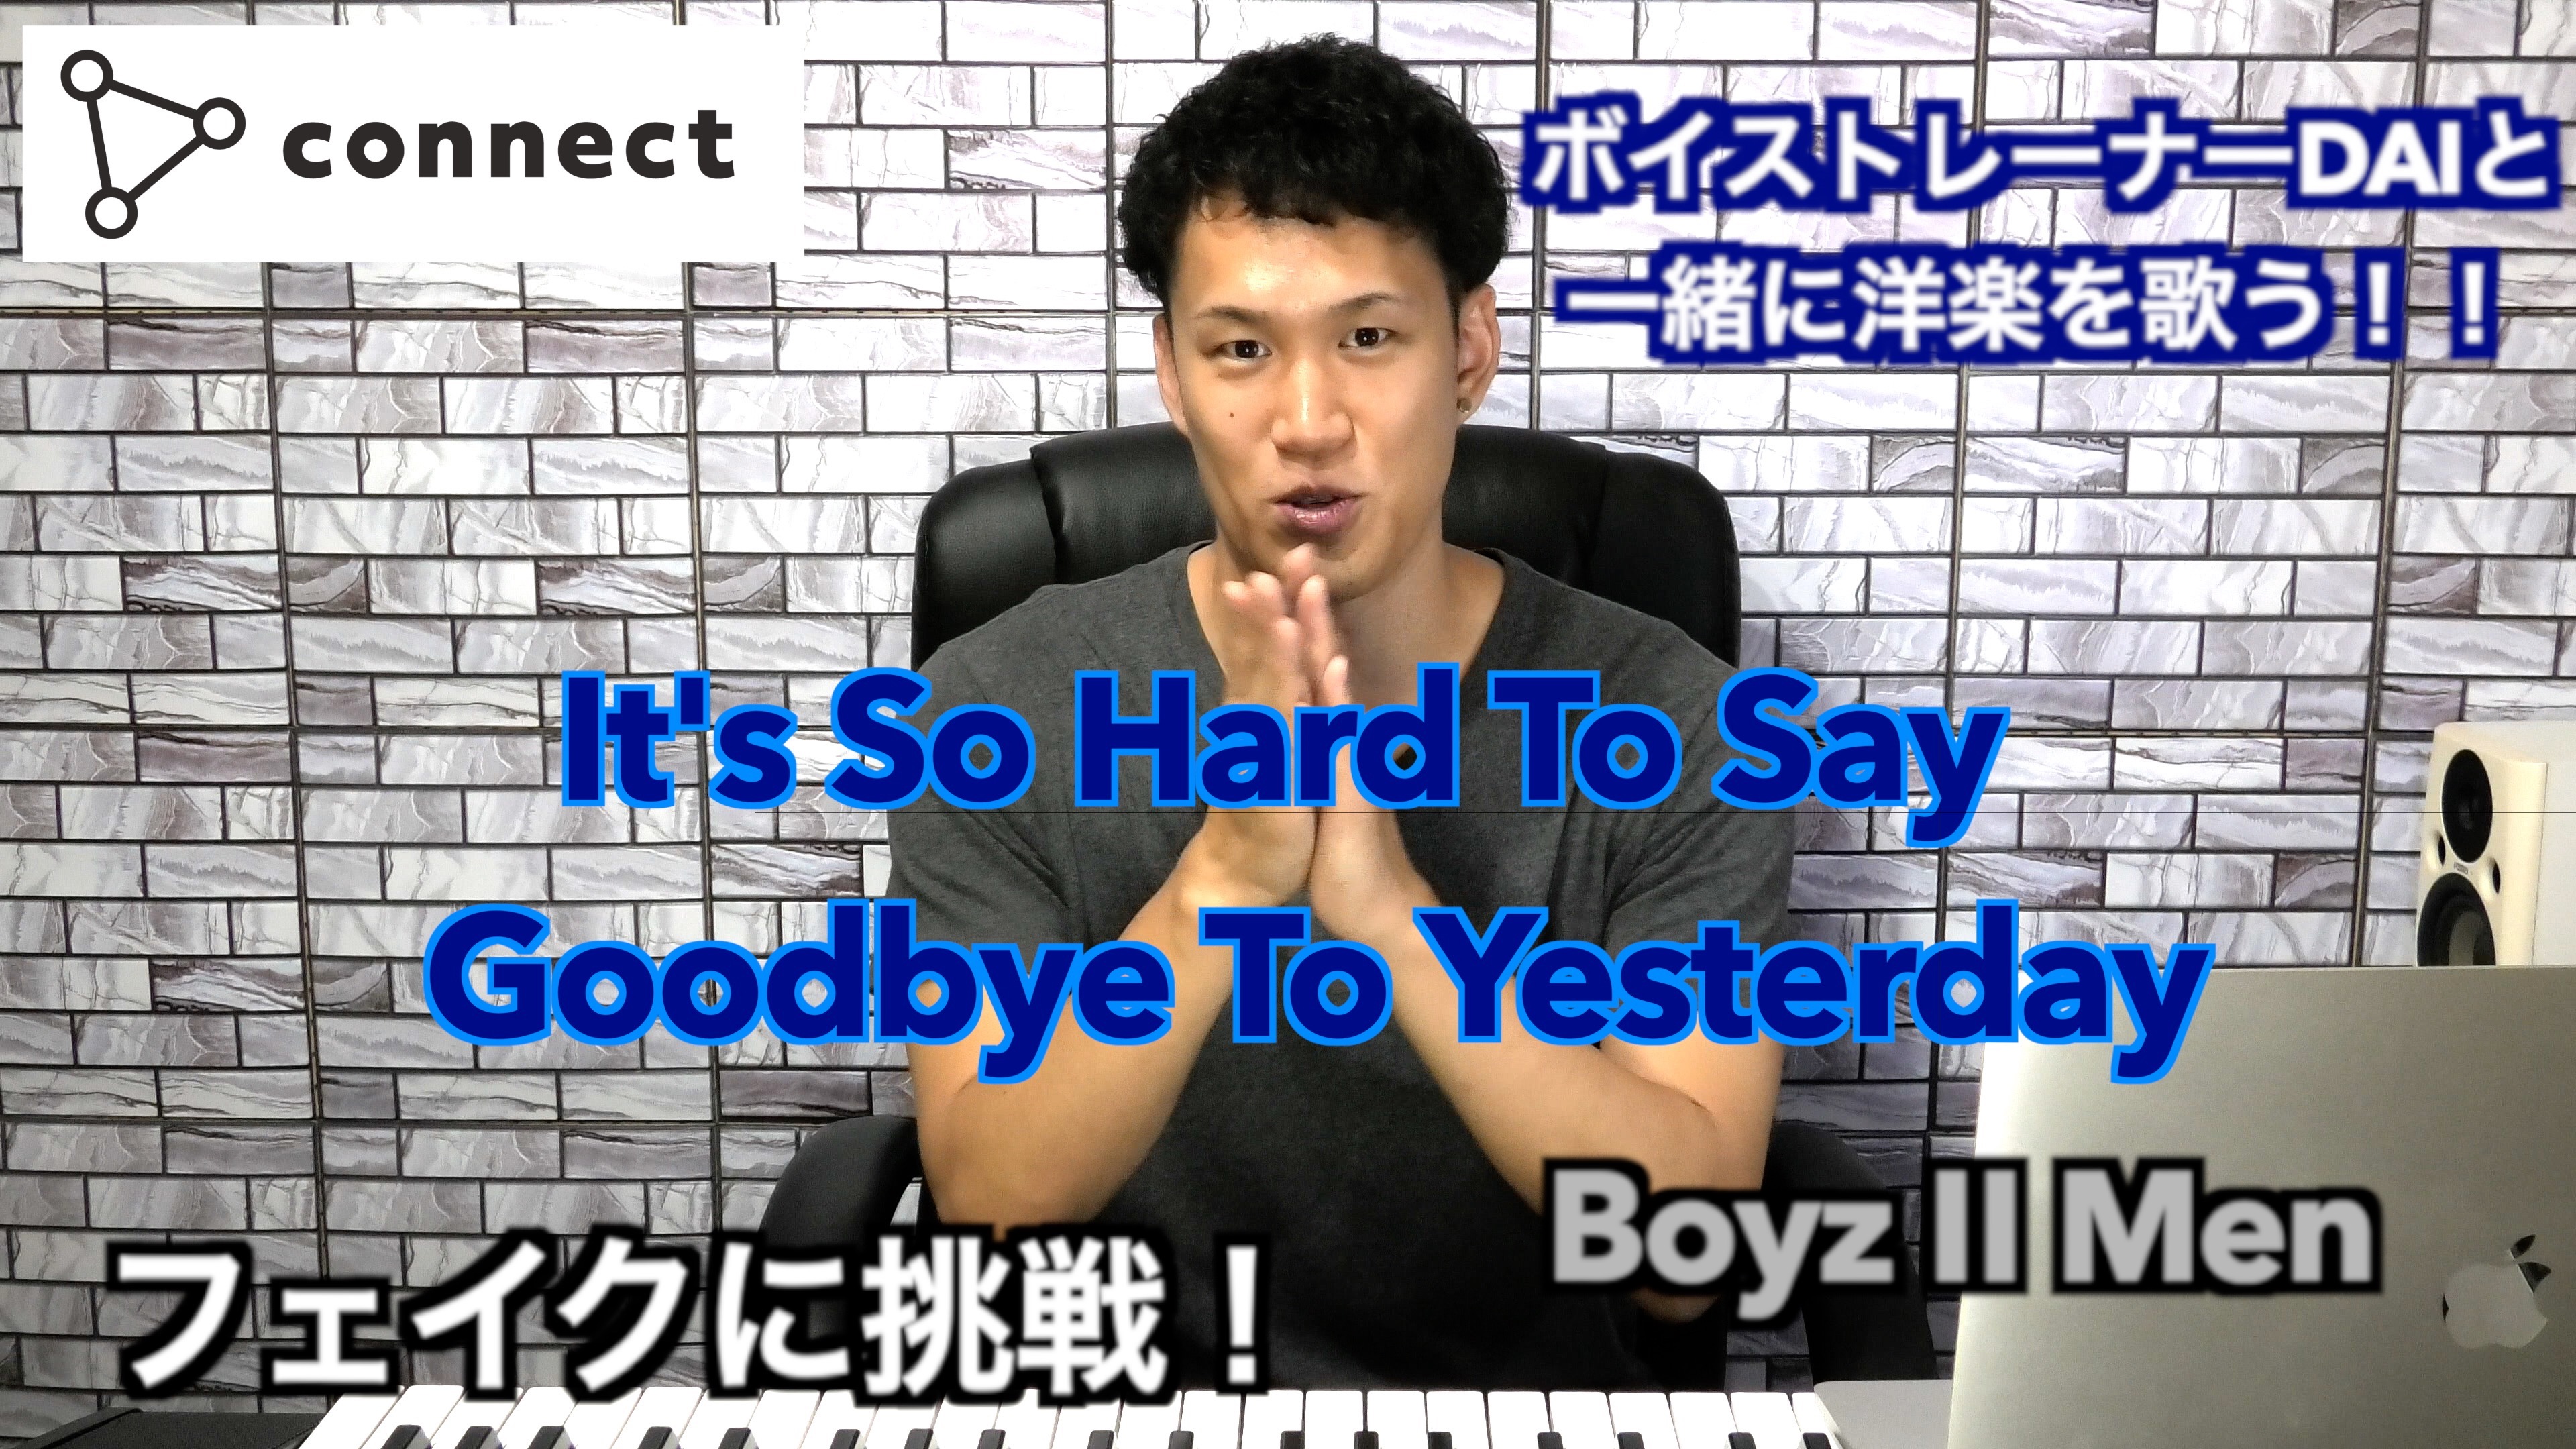 記事 【ボイトレ】It’s So Hard To Say Goodbye To Yesterday / Boyz Ⅱ Men【歌い方】のアイキャッチ画像